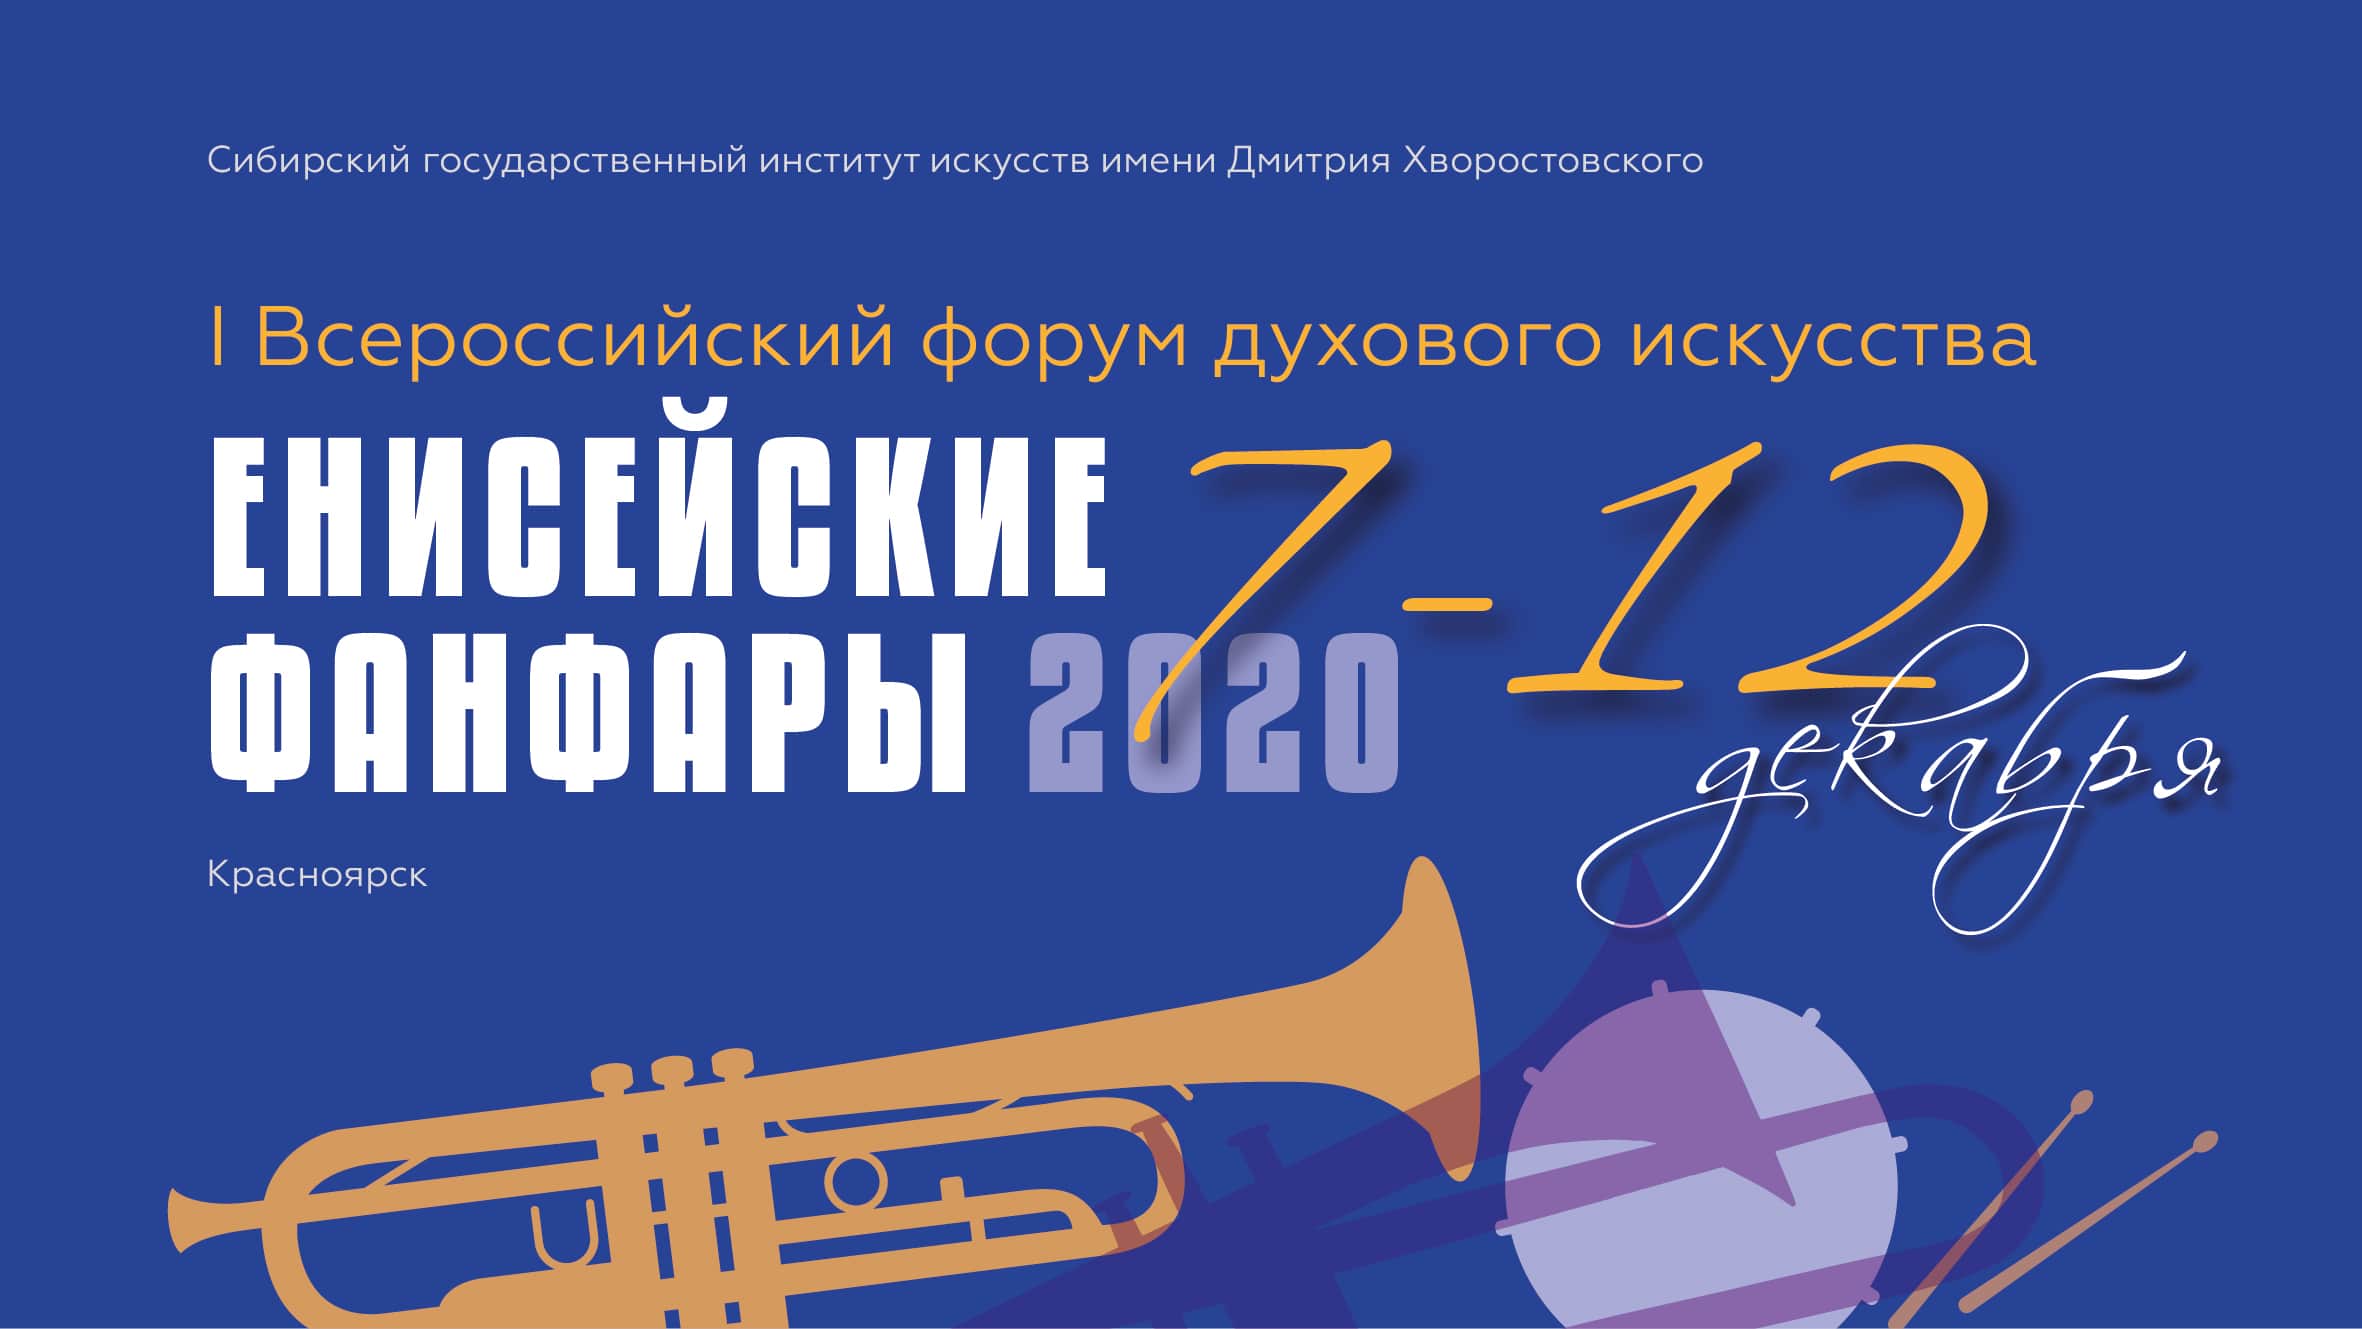 Всероссийский форум духового искусства «Енисейские фанфары – 2020»